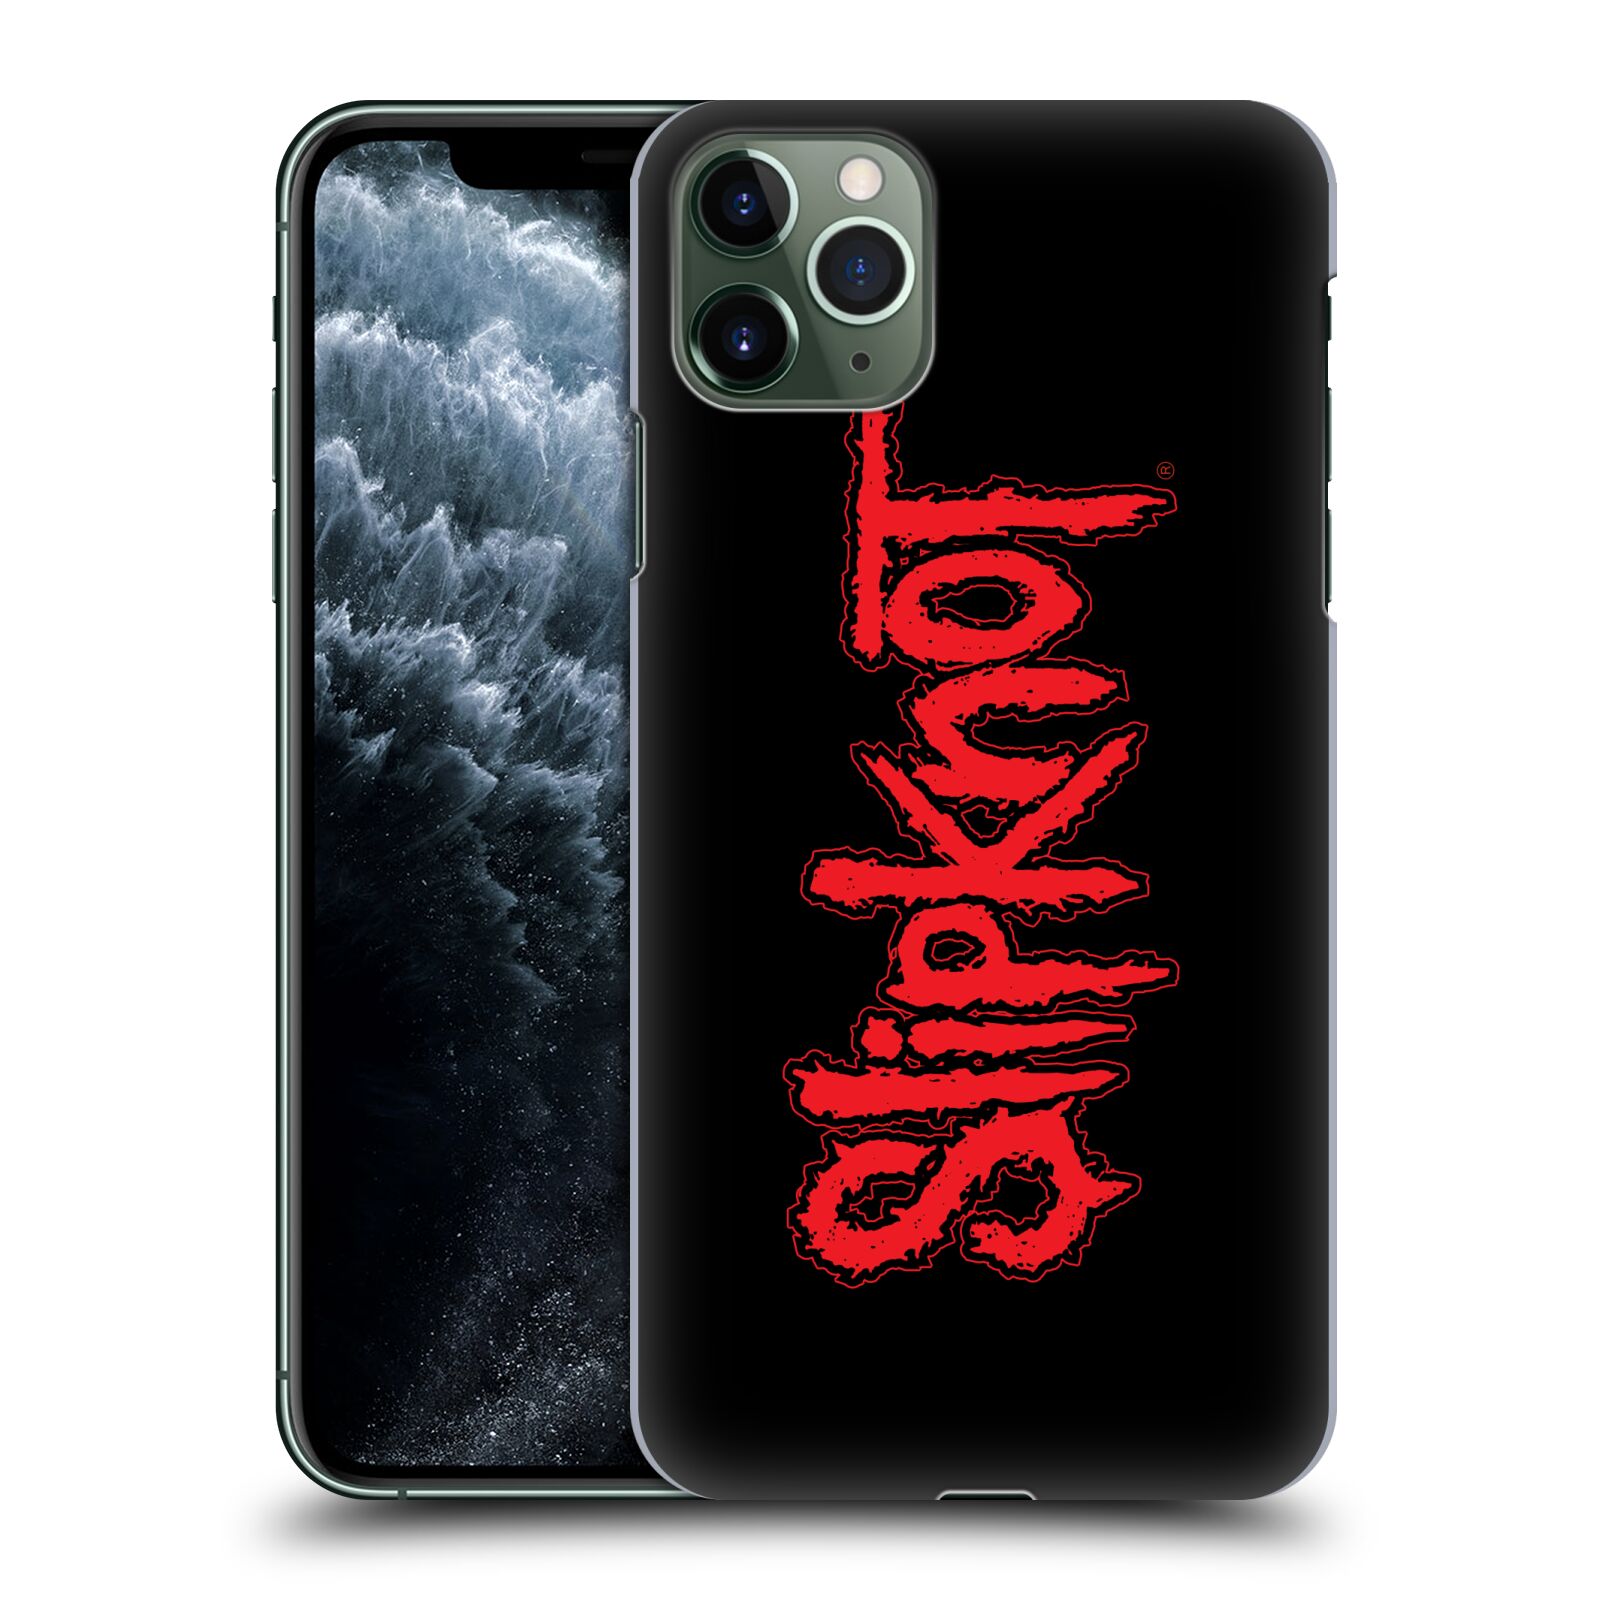 Pouzdro na mobil Apple Iphone 11 PRO MAX - HEAD CASE - hudební skupina Slipknot logo velké